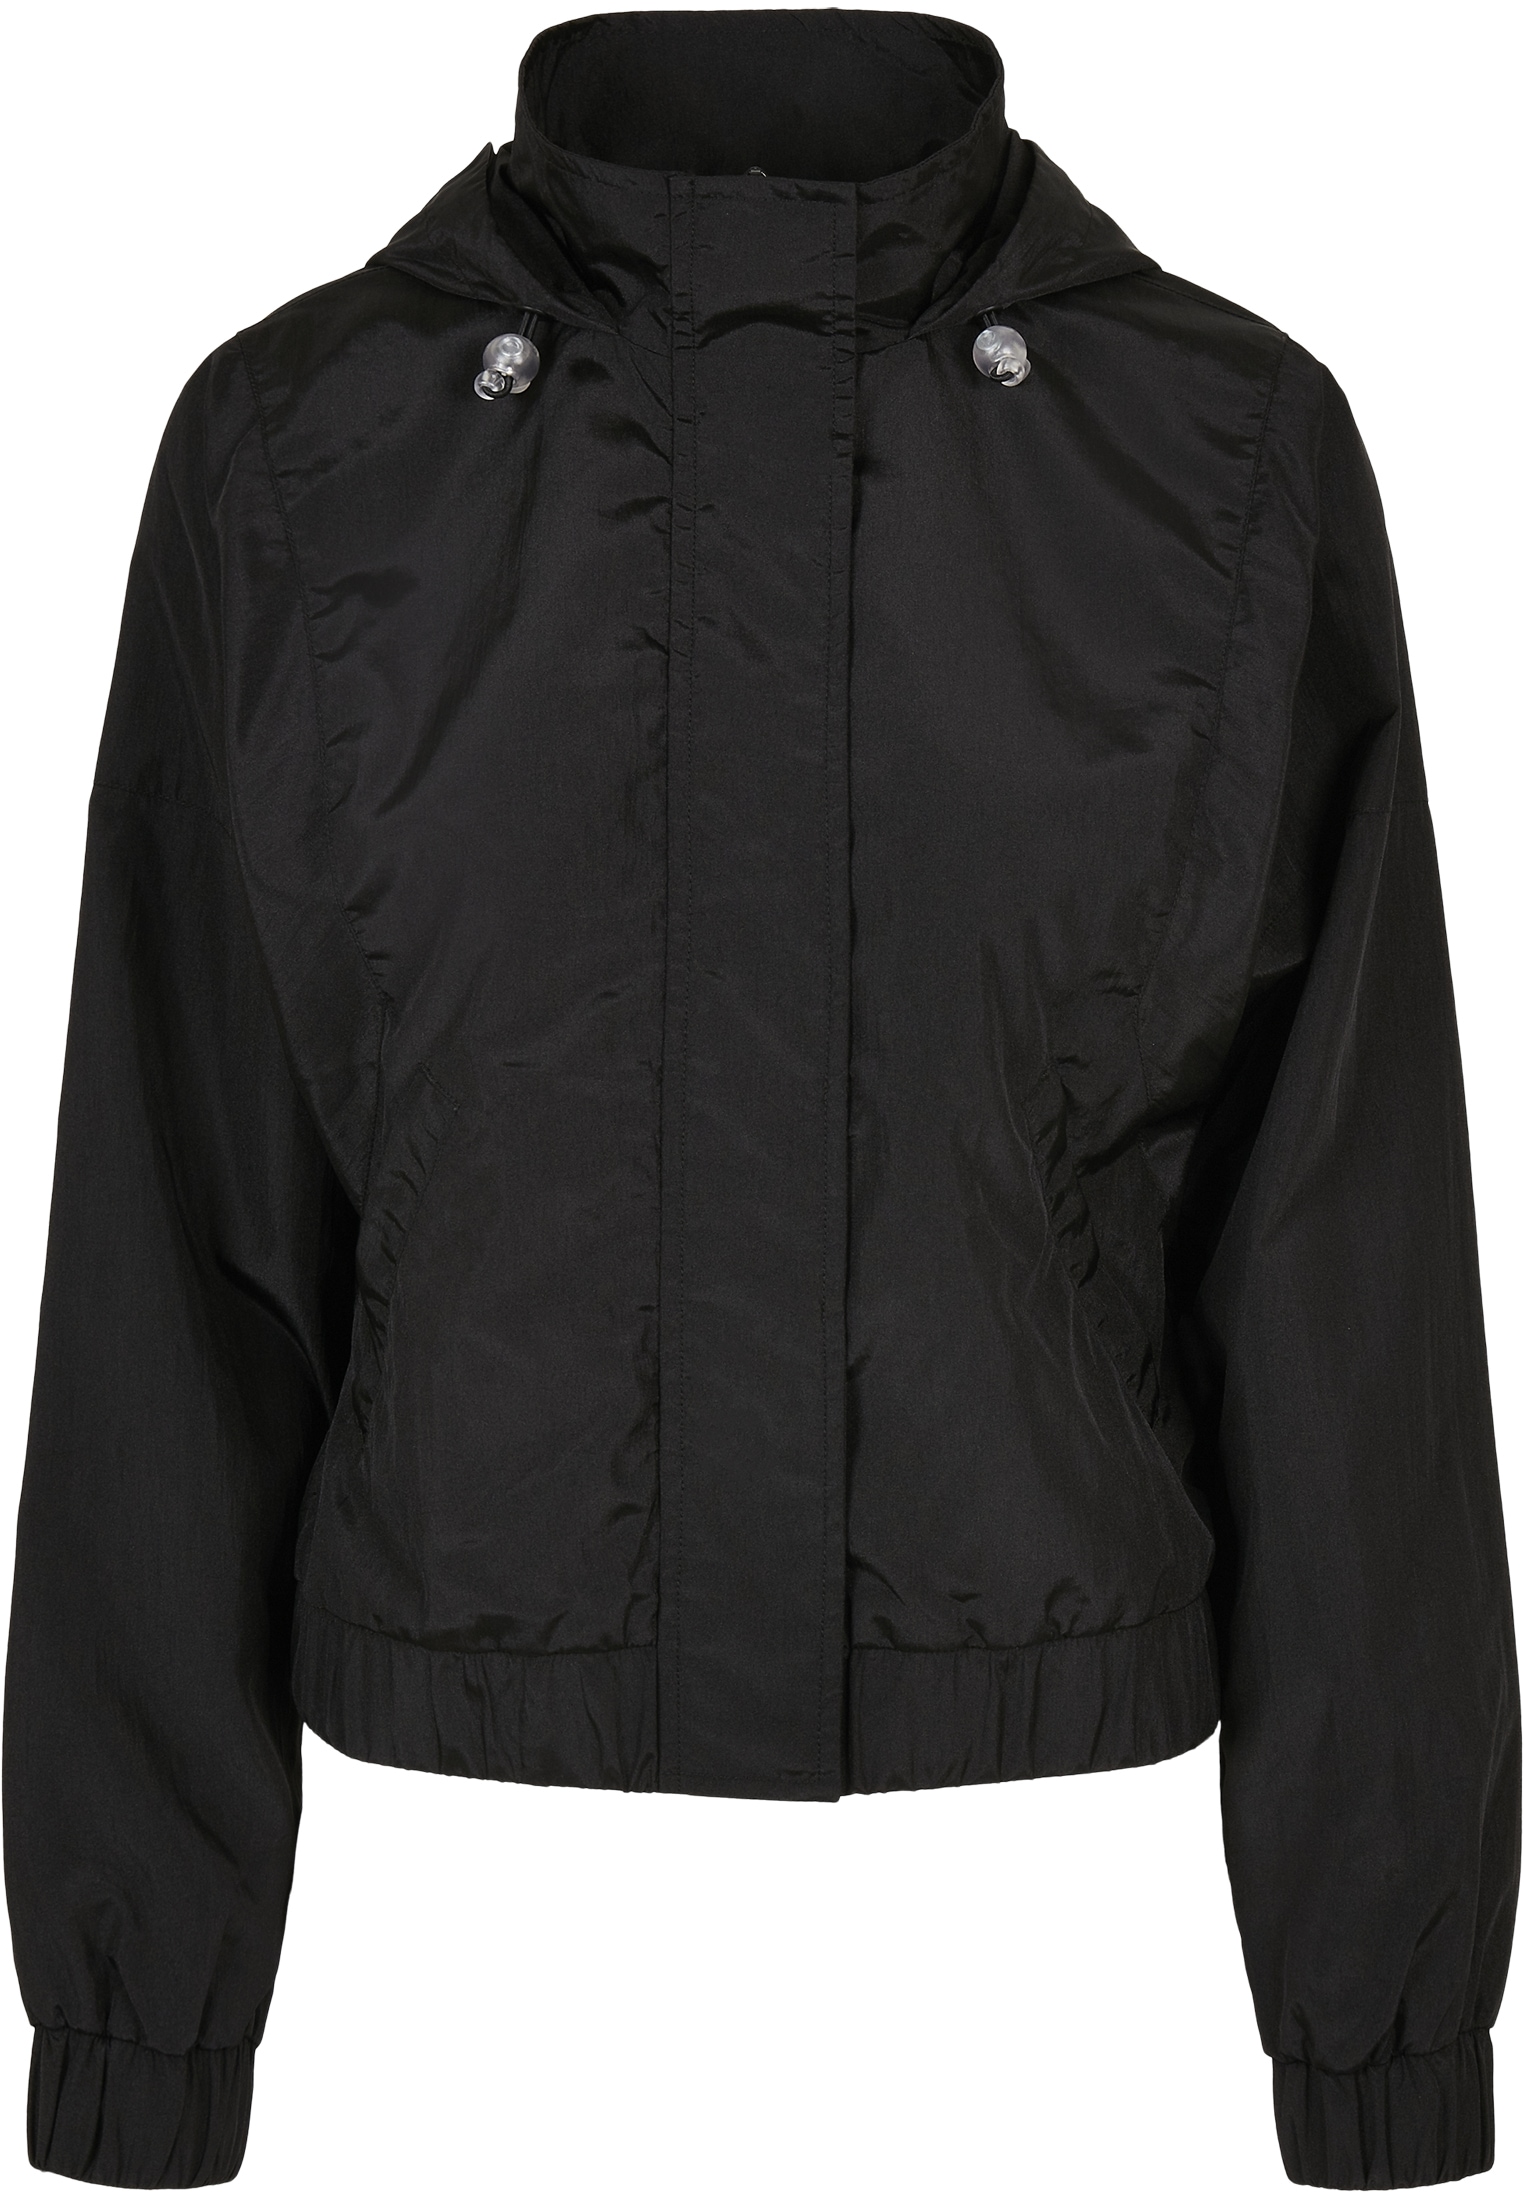 URBAN CLASSICS Outdoorjacke »Frauen St.), Oversized Kapuze Ladies shoppen Jacket«, Crinkle mit Nylon (1 Shiny